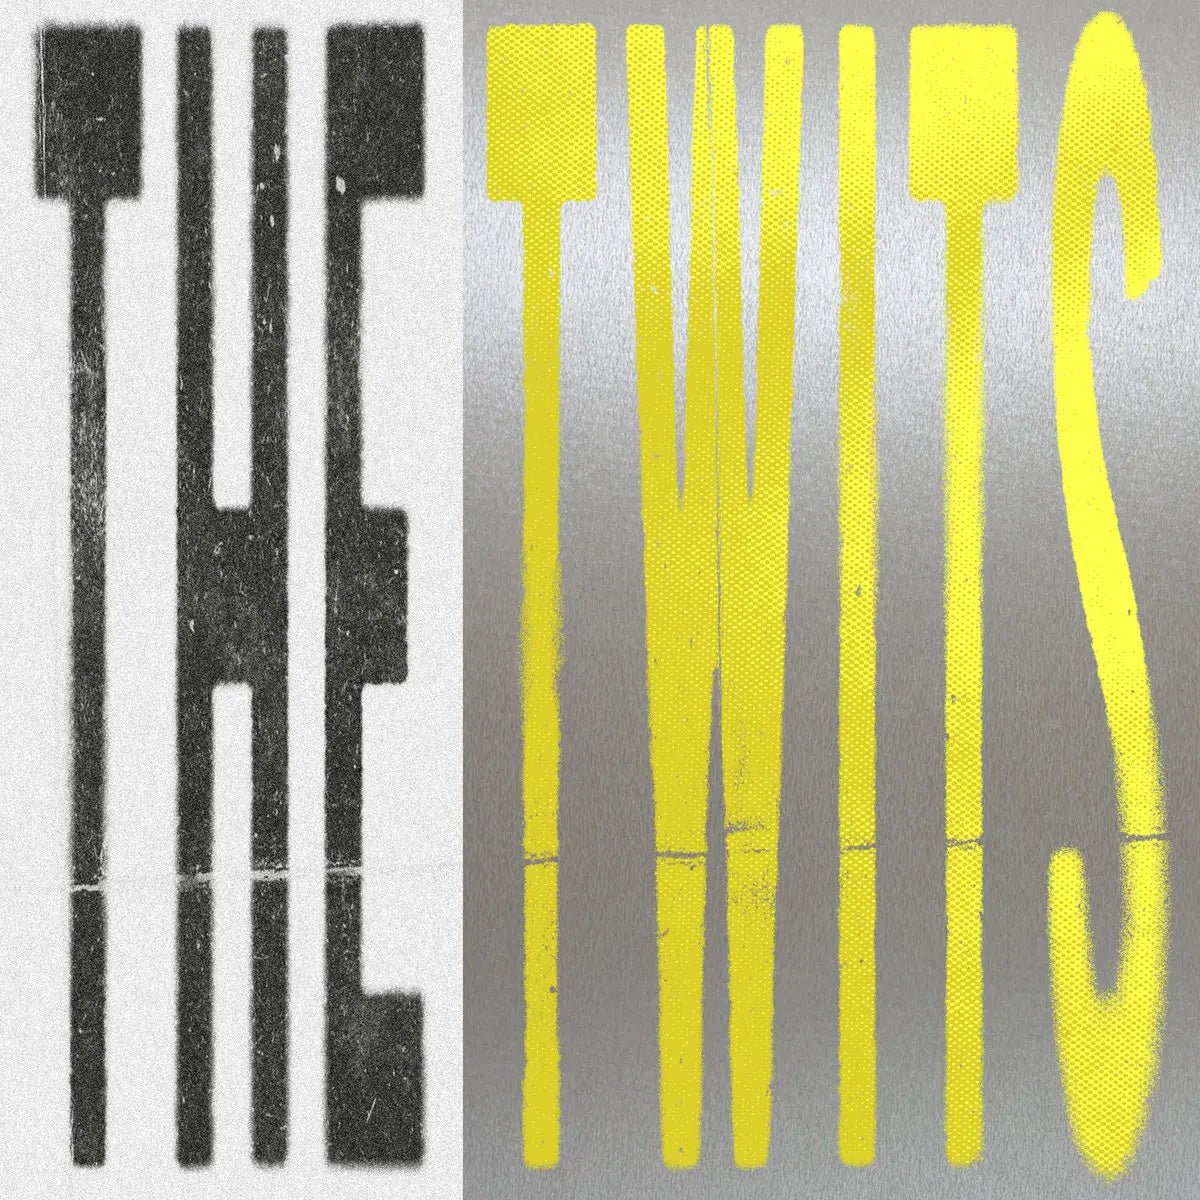 Bar Italia - The Twits [New Vinyl] - Tonality Records